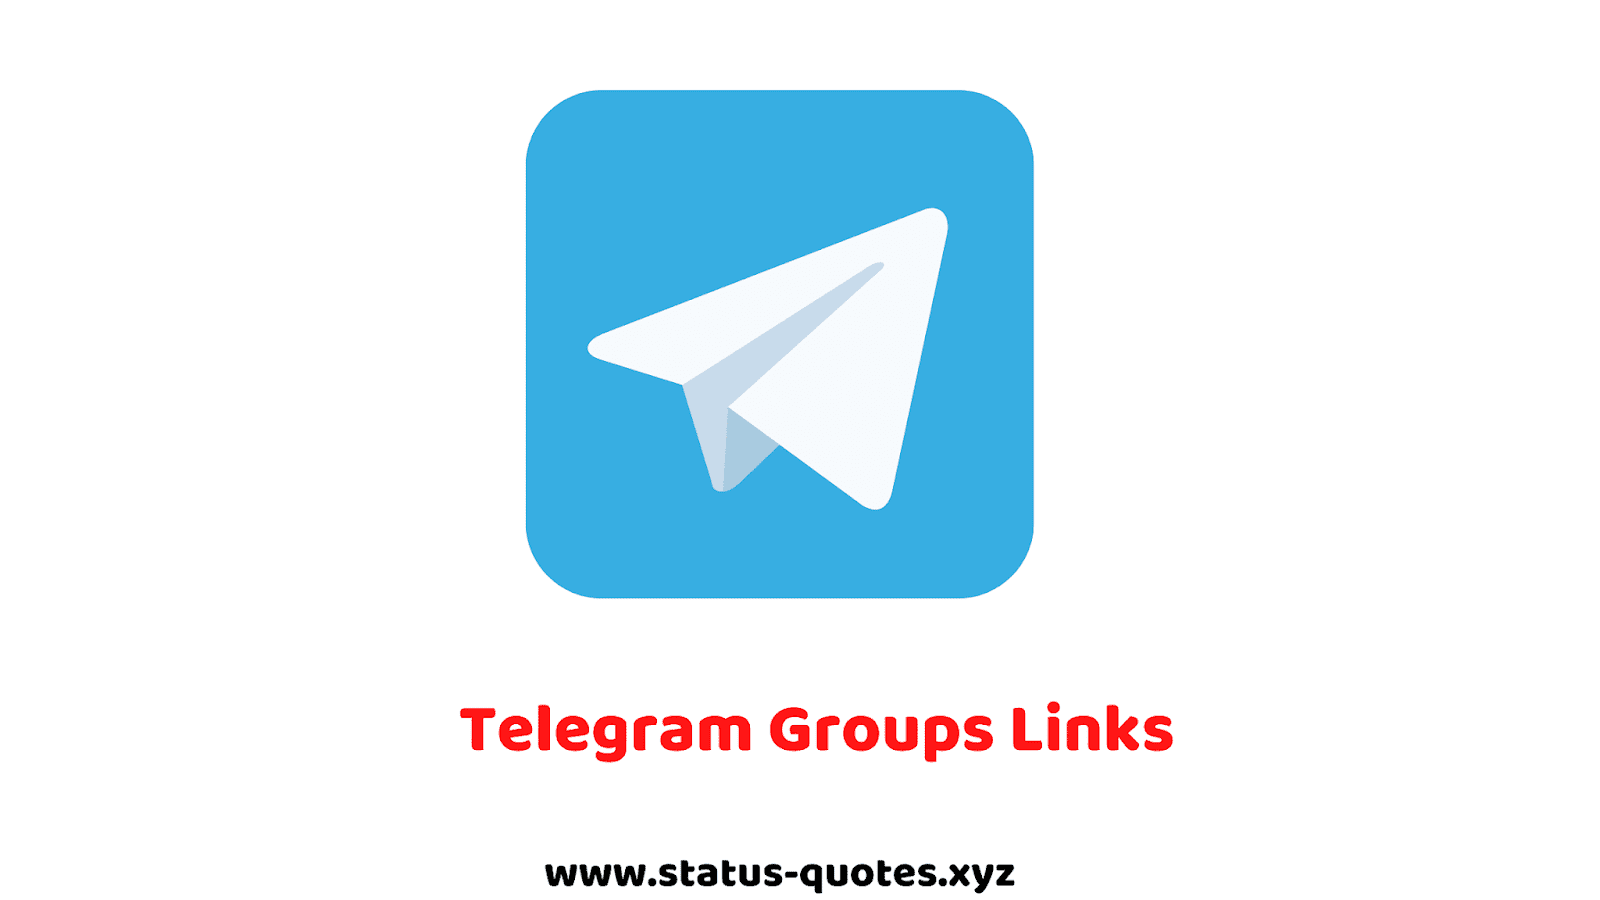 Загрузить телеграмм на телефон бесплатно на русском языке андроид самсунг галакси фото 91